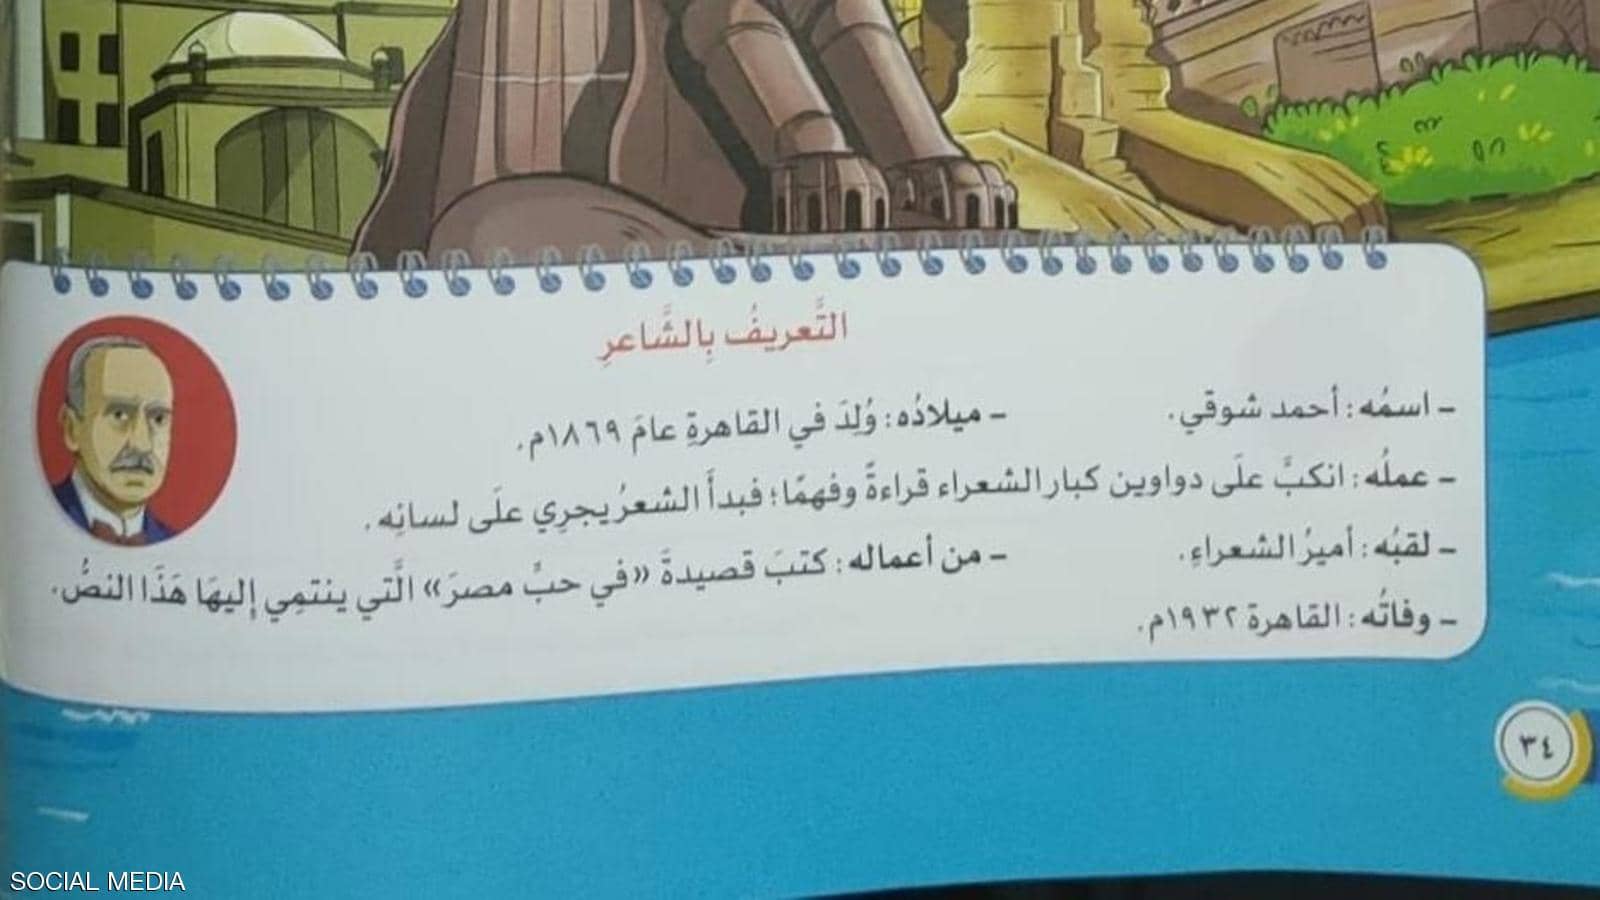 التفاصيل الكاملة حول قصيدة "يامِصرُ" والخطأ الفادح الذي أثار ضجةً عارمةً على مواقع التواصل الإجتماعي وردٌ مثير من وزارة التربية والتعليم المصرية 